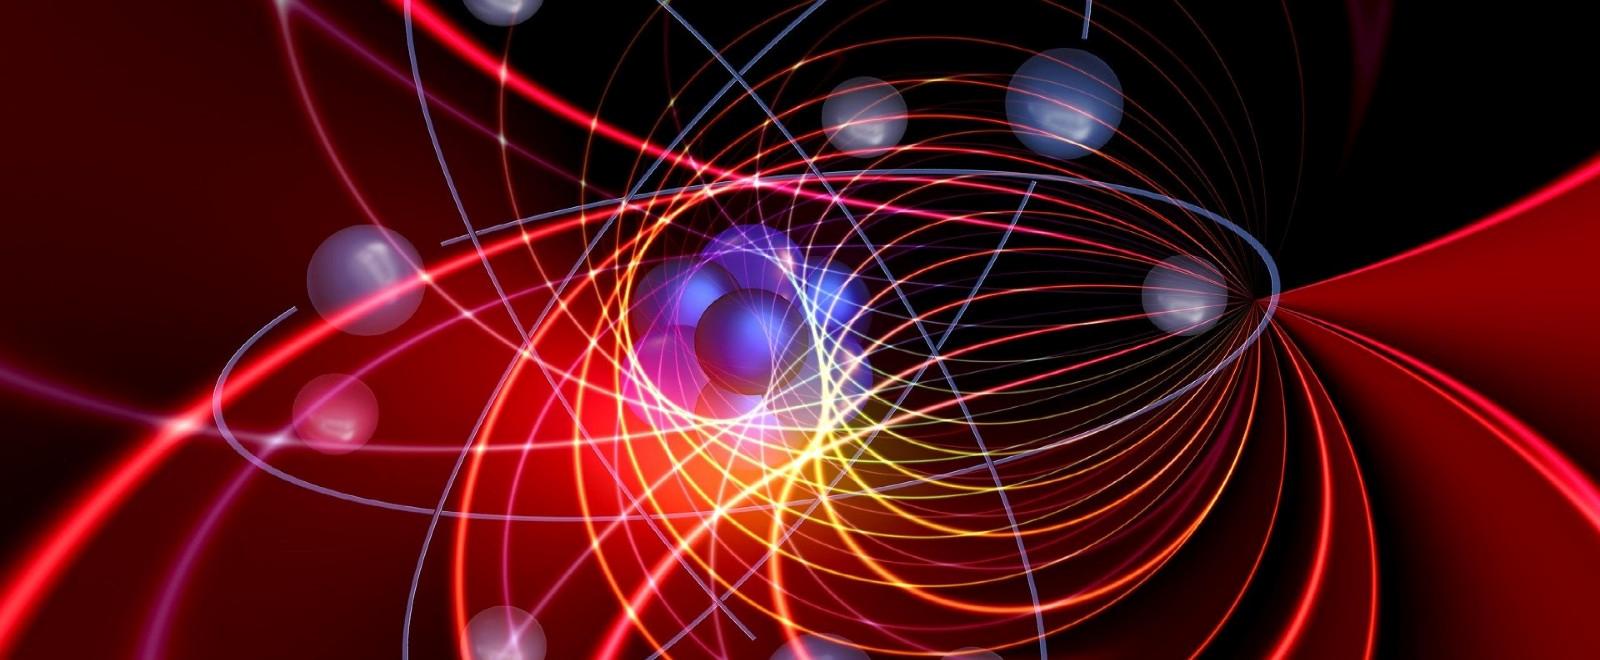 Físicos crean "moléculas" de luz fusionando fibras ópticas